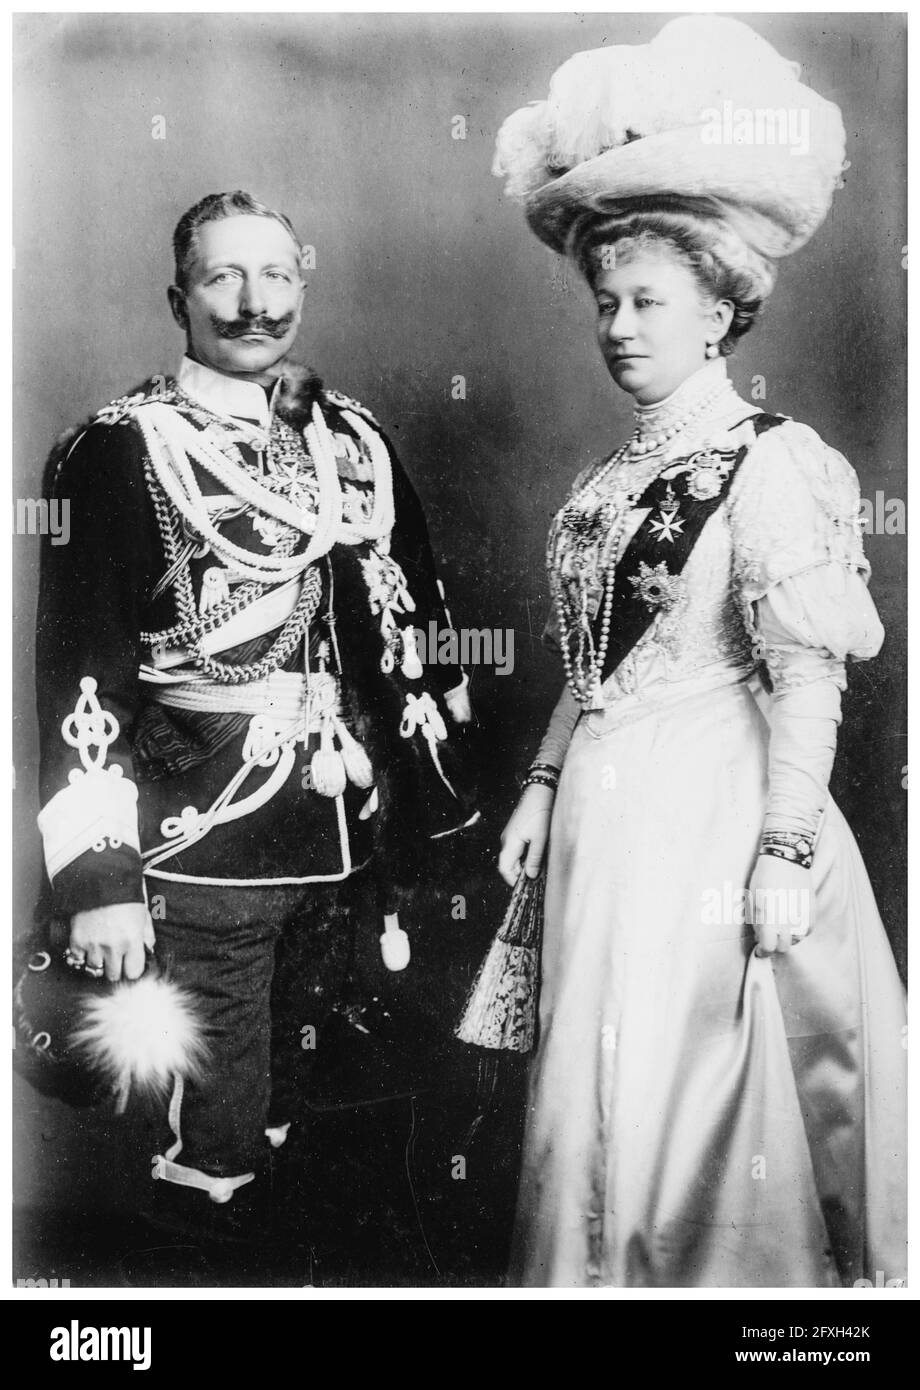 Guillaume II (1859-1941) (Guillaume II) en uniforme militaire, le dernier empereur allemand (Kaiser) et roi de Prusse (1888-1918), avec sa femme Augusta Kaiserin Victoria du Schleswig-Holstein (1858-1921), photographie de portrait vers 1900 Banque D'Images